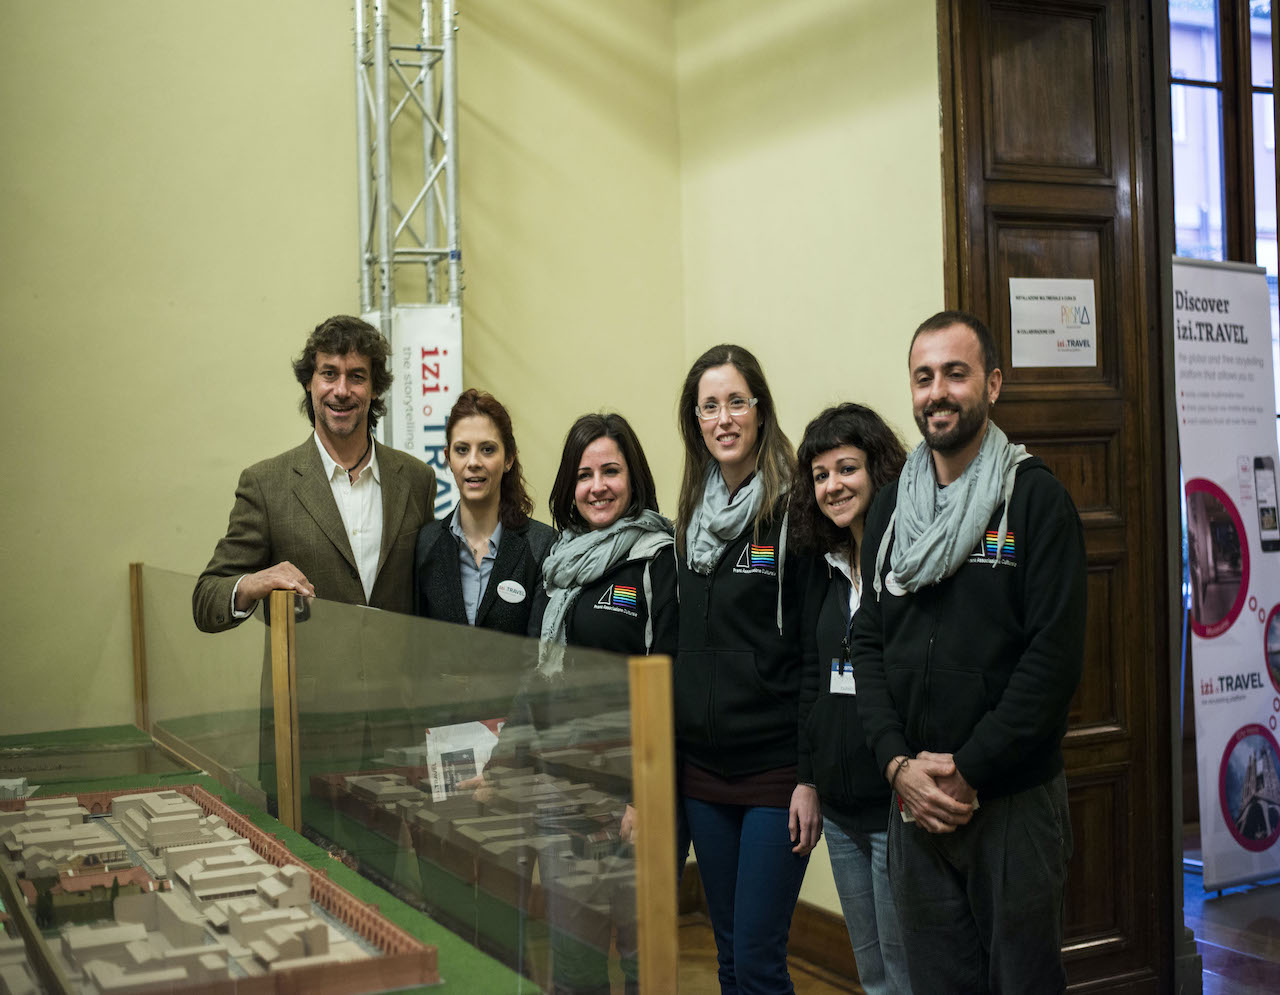 tourismA 2015, Alberto Angela visita la valorizzazione del Plastico di Florentia Romana realizzata da Prisma.